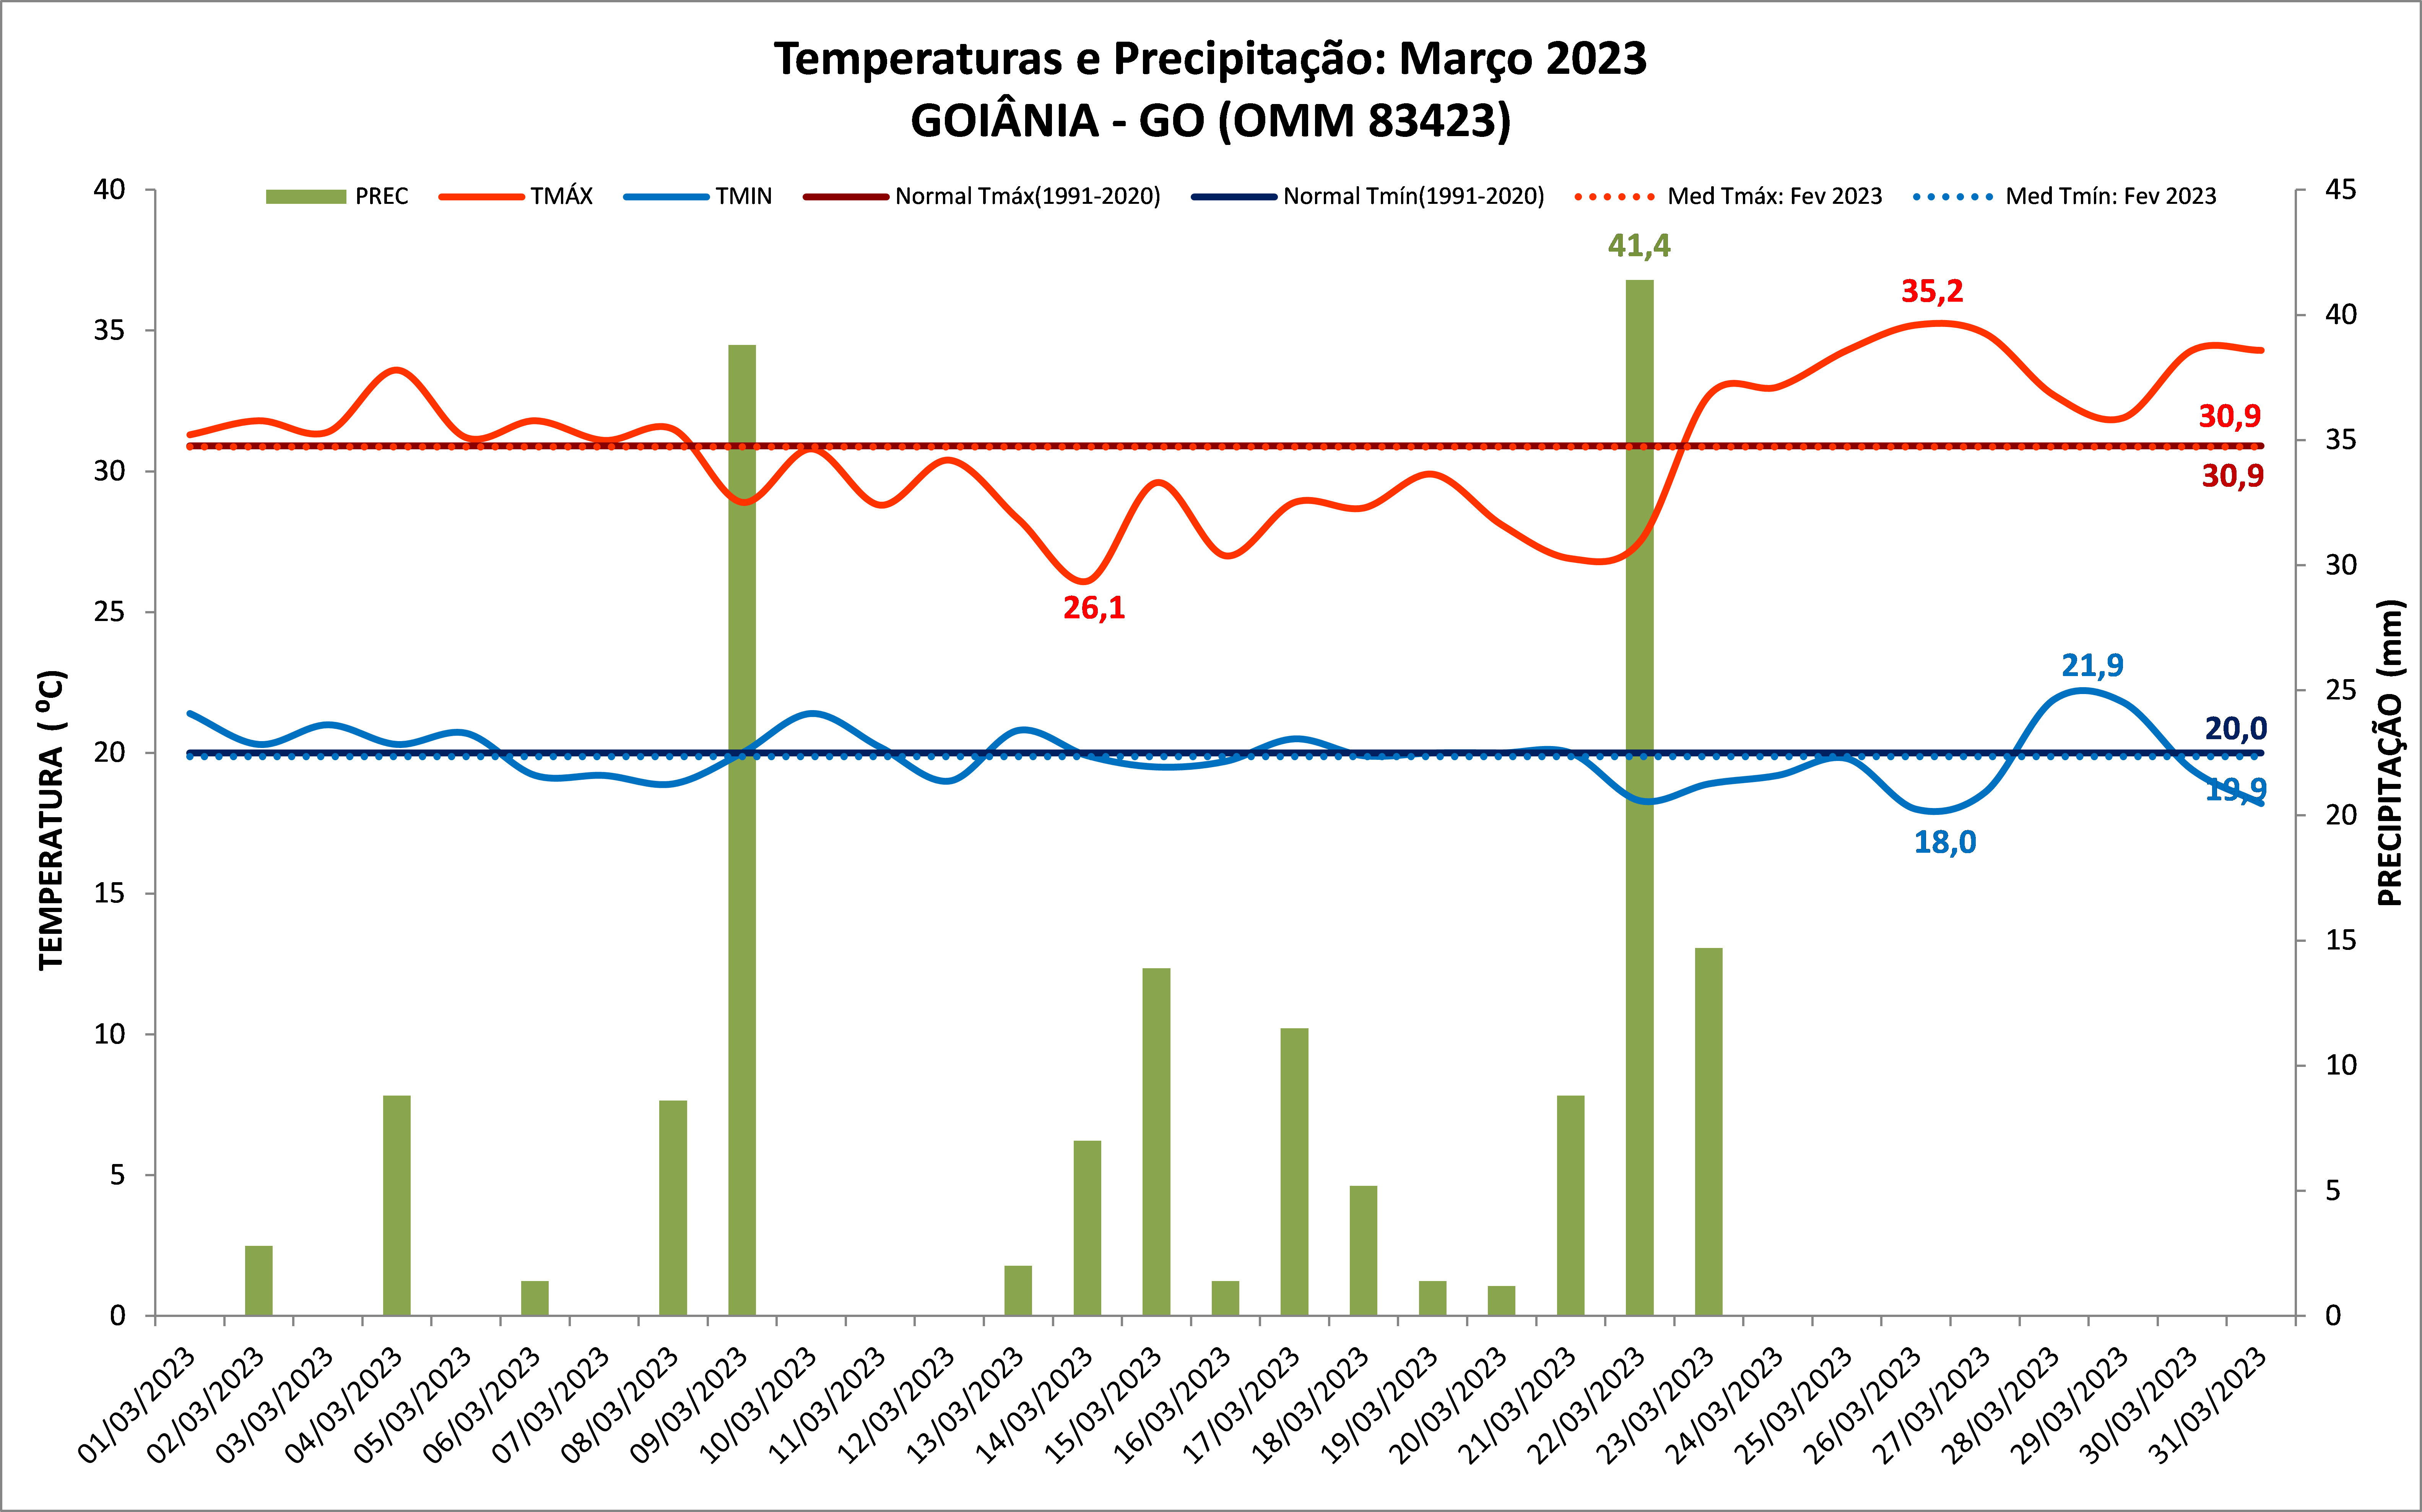 Balanço: Goiânia (GO) teve chuva abaixo da média em março de 2023